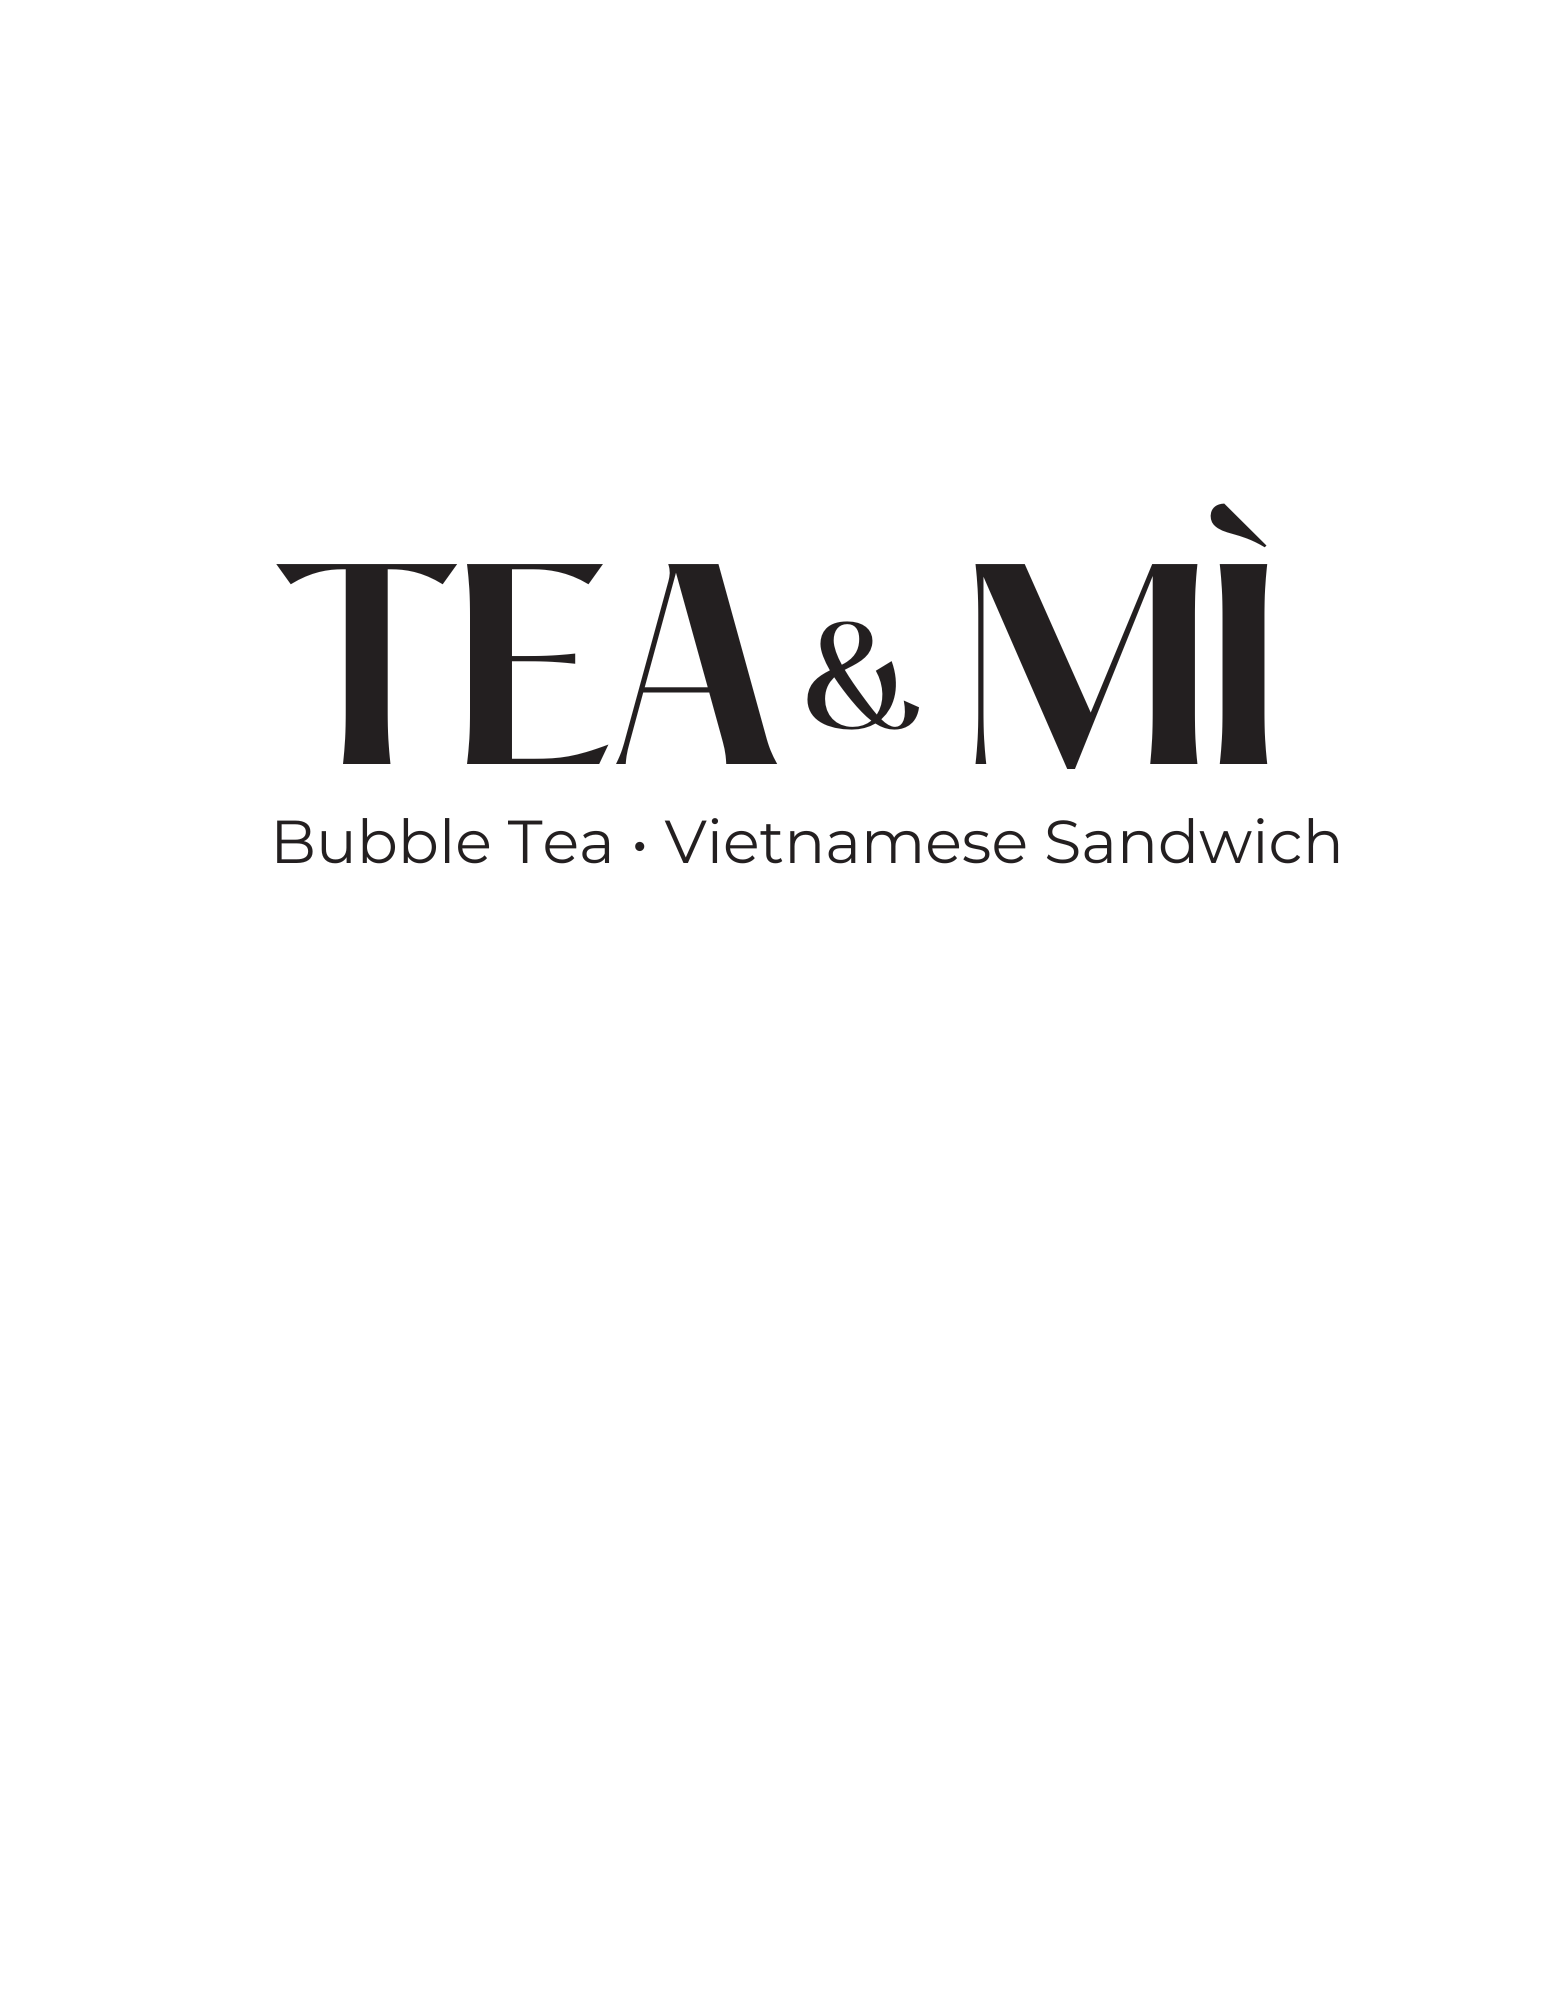 Tea & Mi LLC